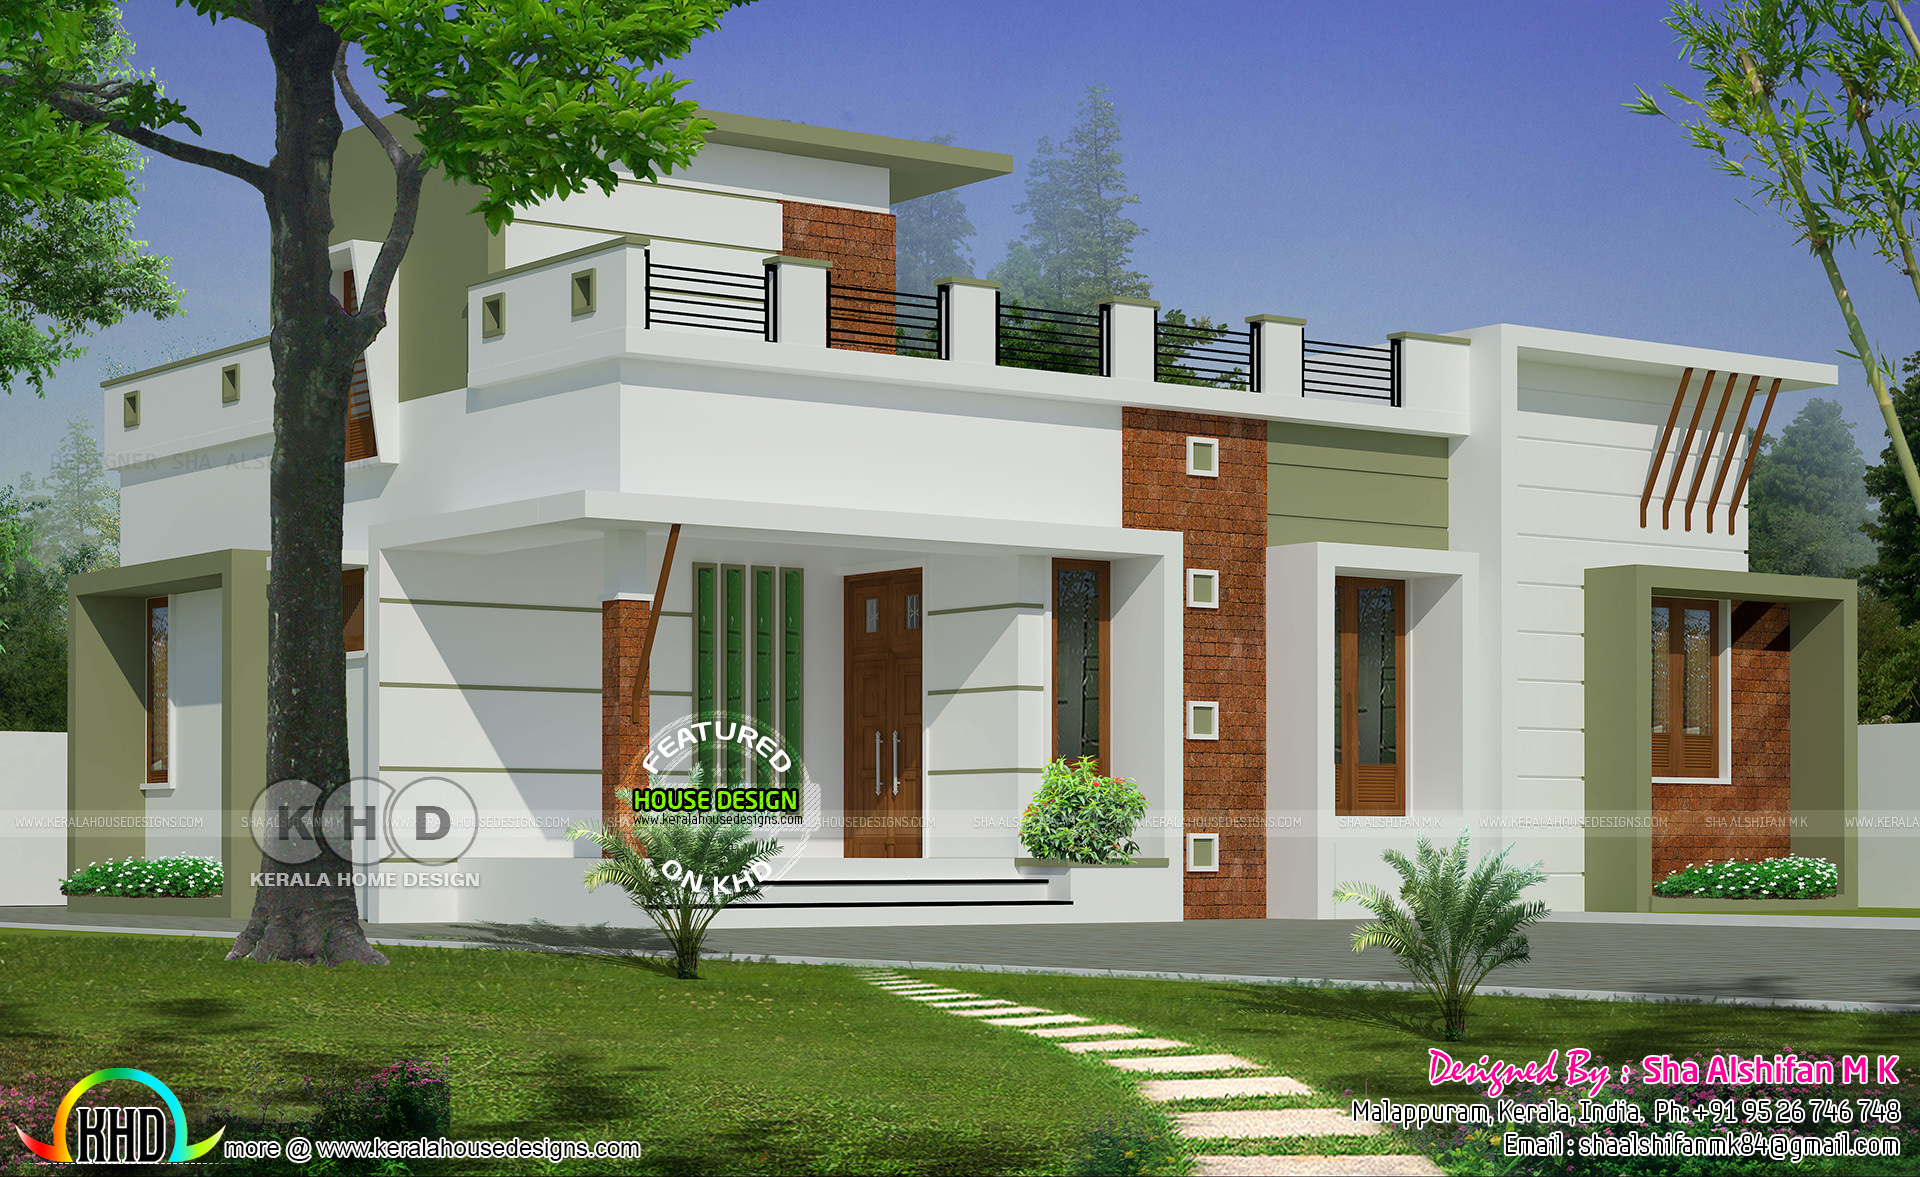 983 Sq  feet  2  bedroom  one floor home  Kerala  home  design  